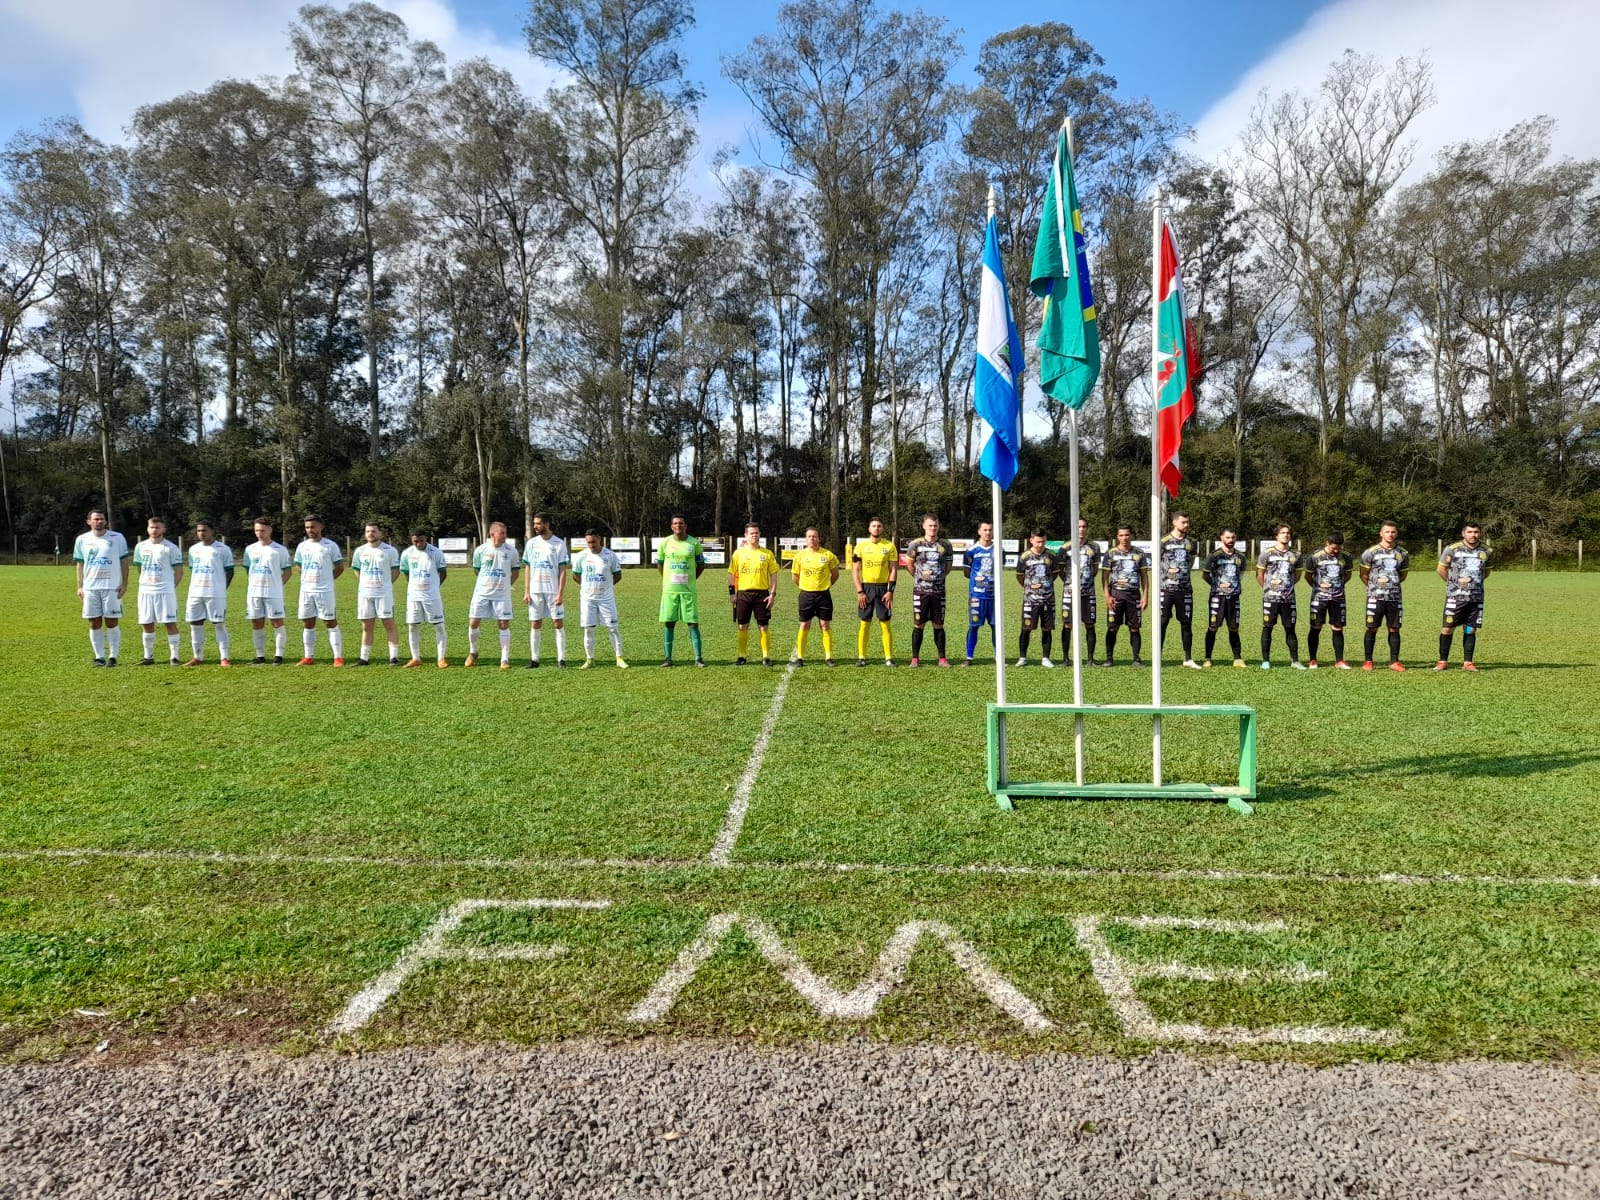 Imperial vence a primeira e Cacique empata com a Ponte Preta na 3ª rodada da Liga Riosulense de Futebol